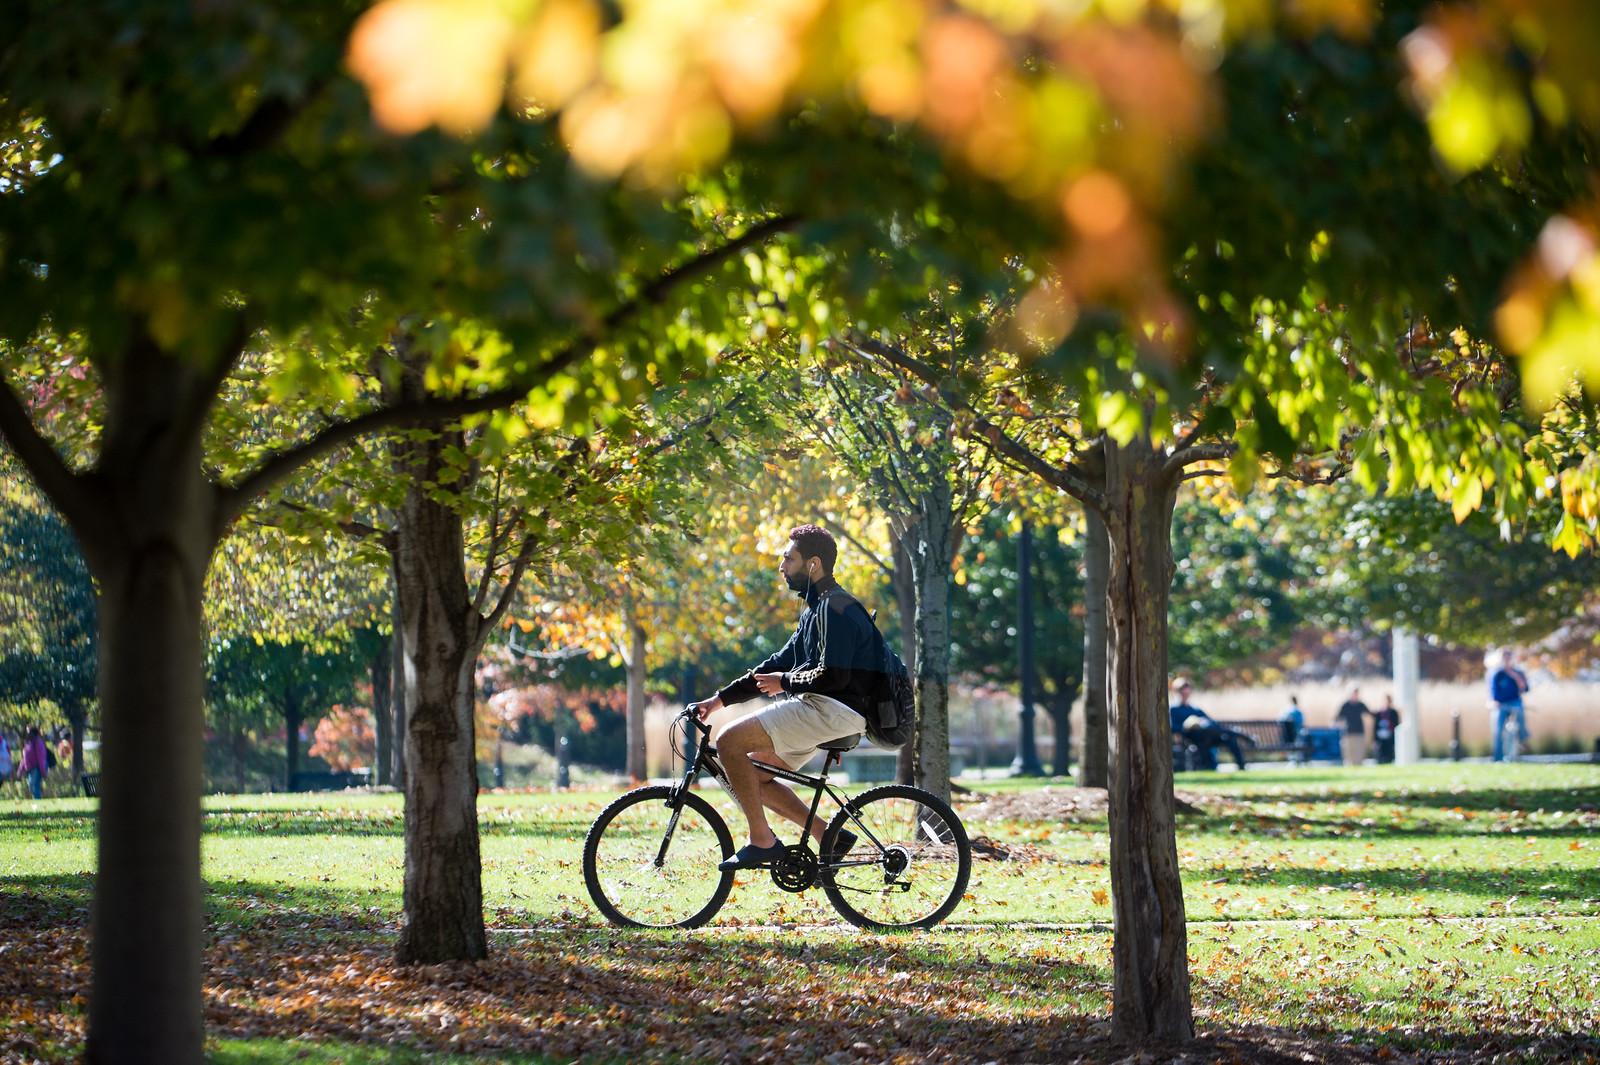 下面是秋天的树和草，一个人骑着自行车穿过画面的中心